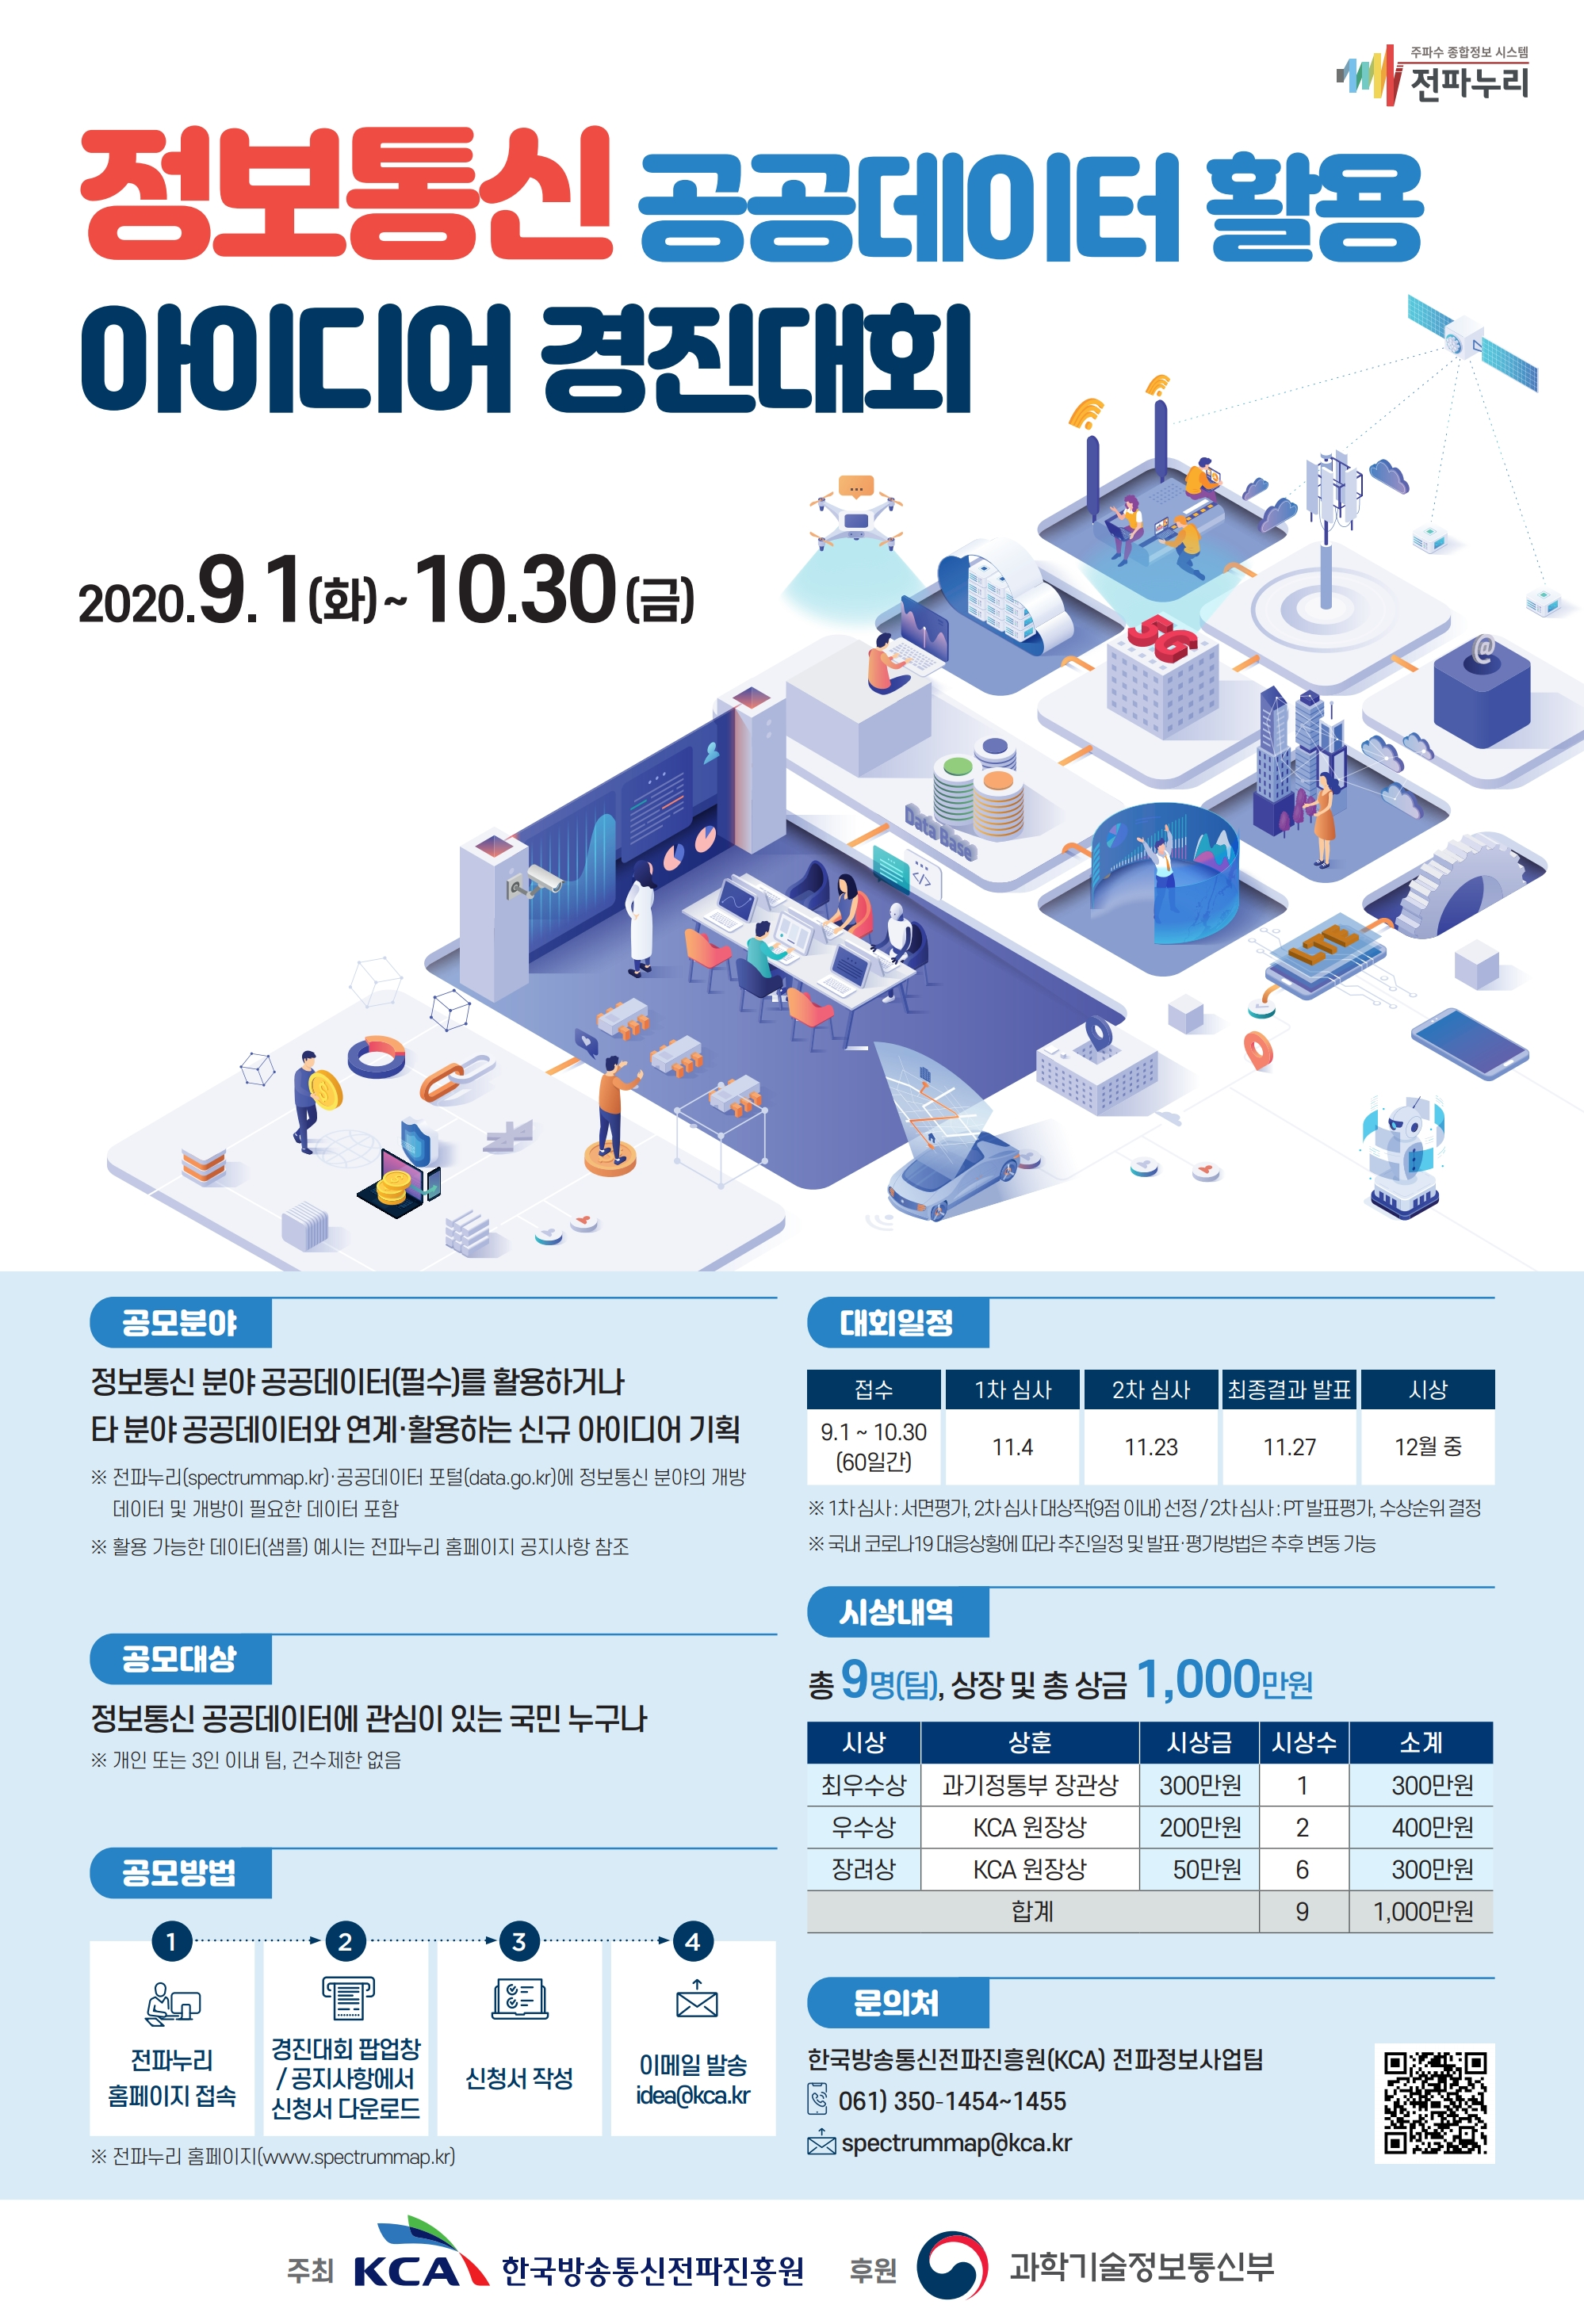 정보통신 공공데이터 활용 아이디어 경진대회 개최